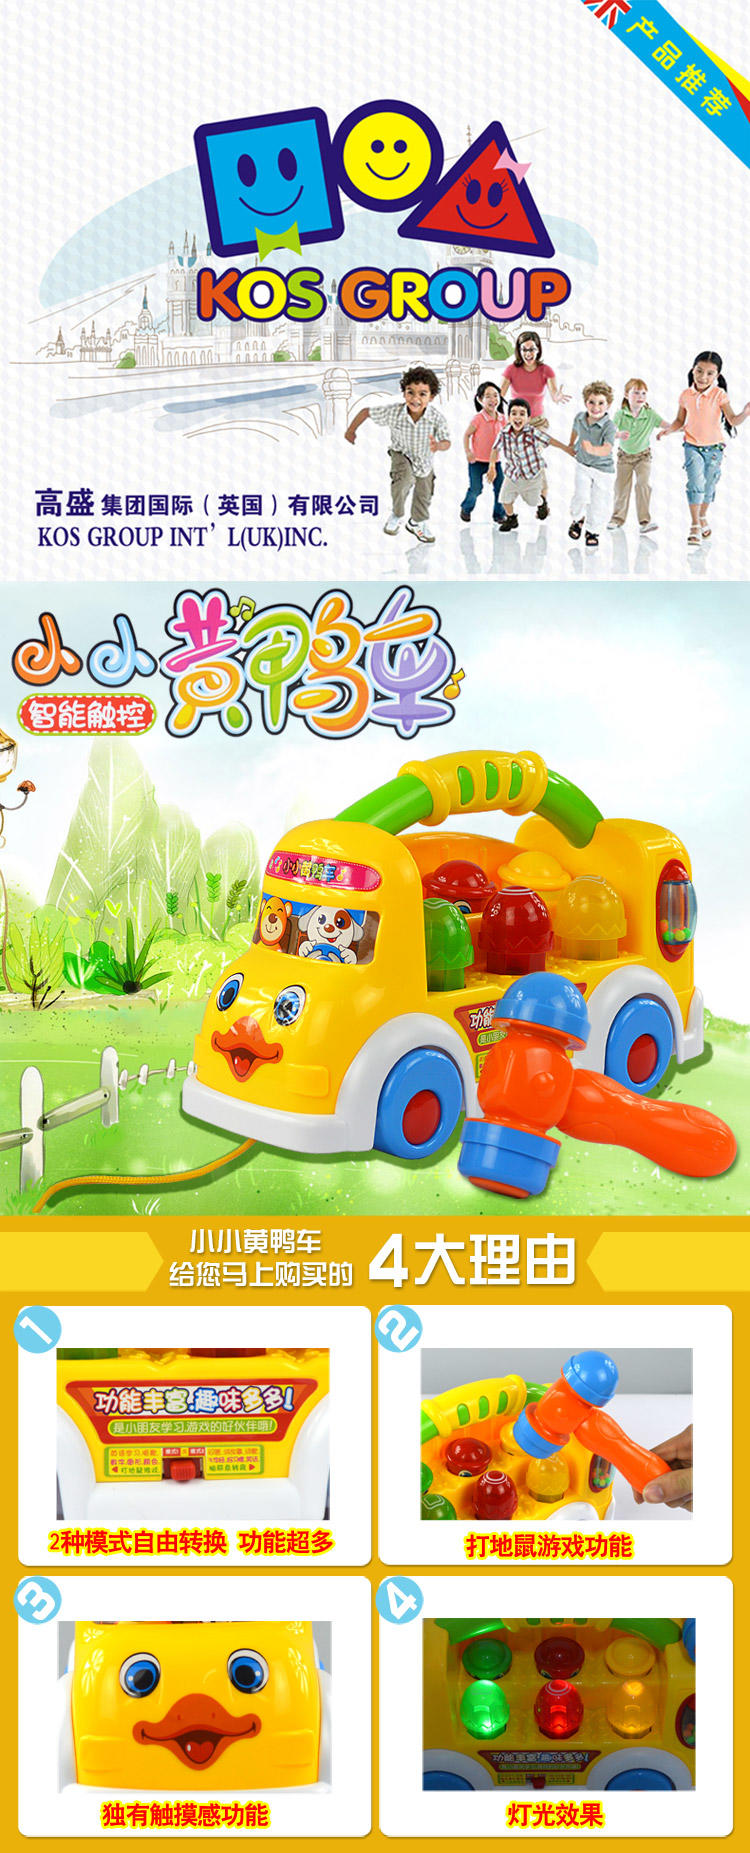 高盛智能小小黄鸭车 多功能音乐灯光益智玩具 打地鼠玩具 触摸感应玩具